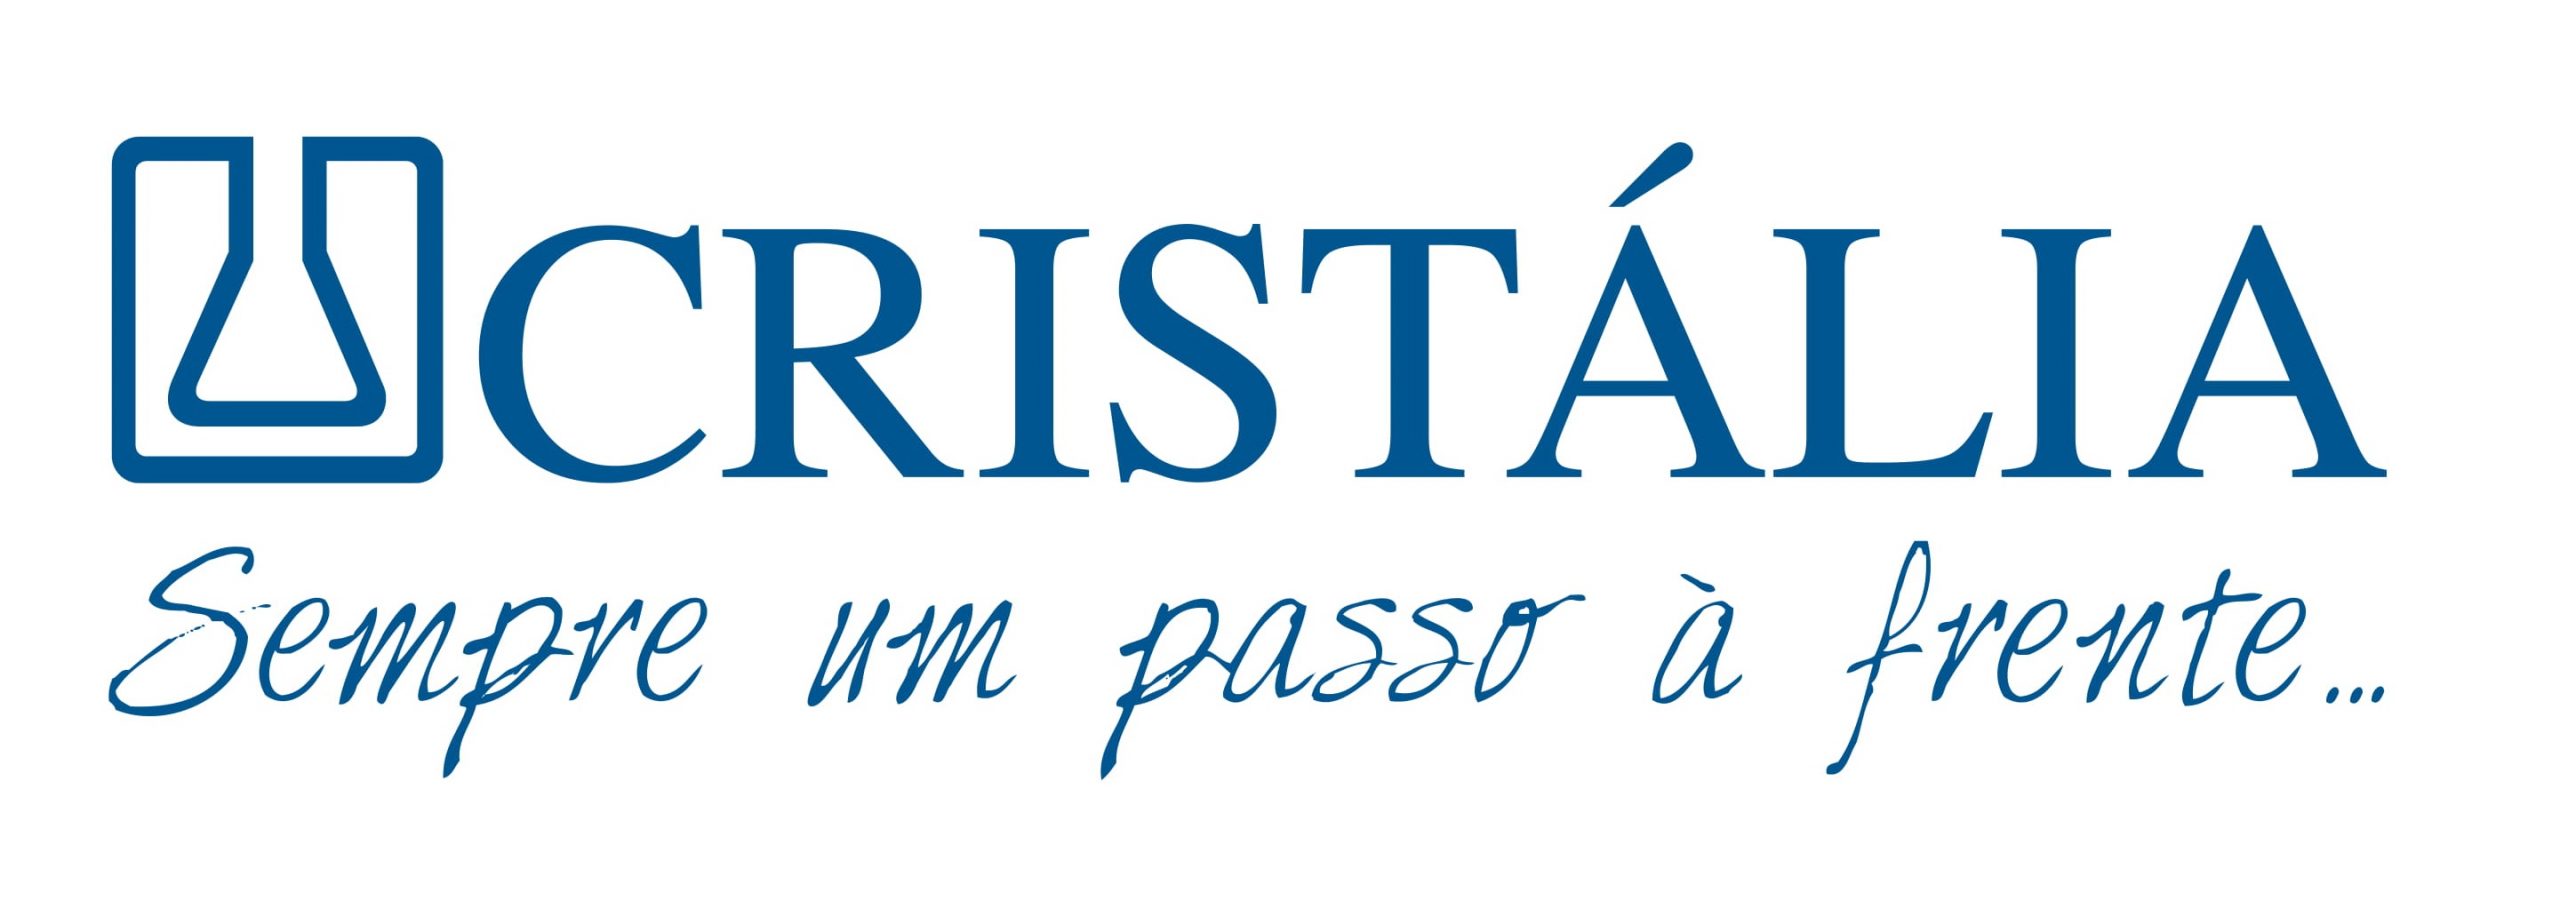 Logo Cristalia c frase alinhada.ai NOVO 1 1 scaled - Projeto Cura